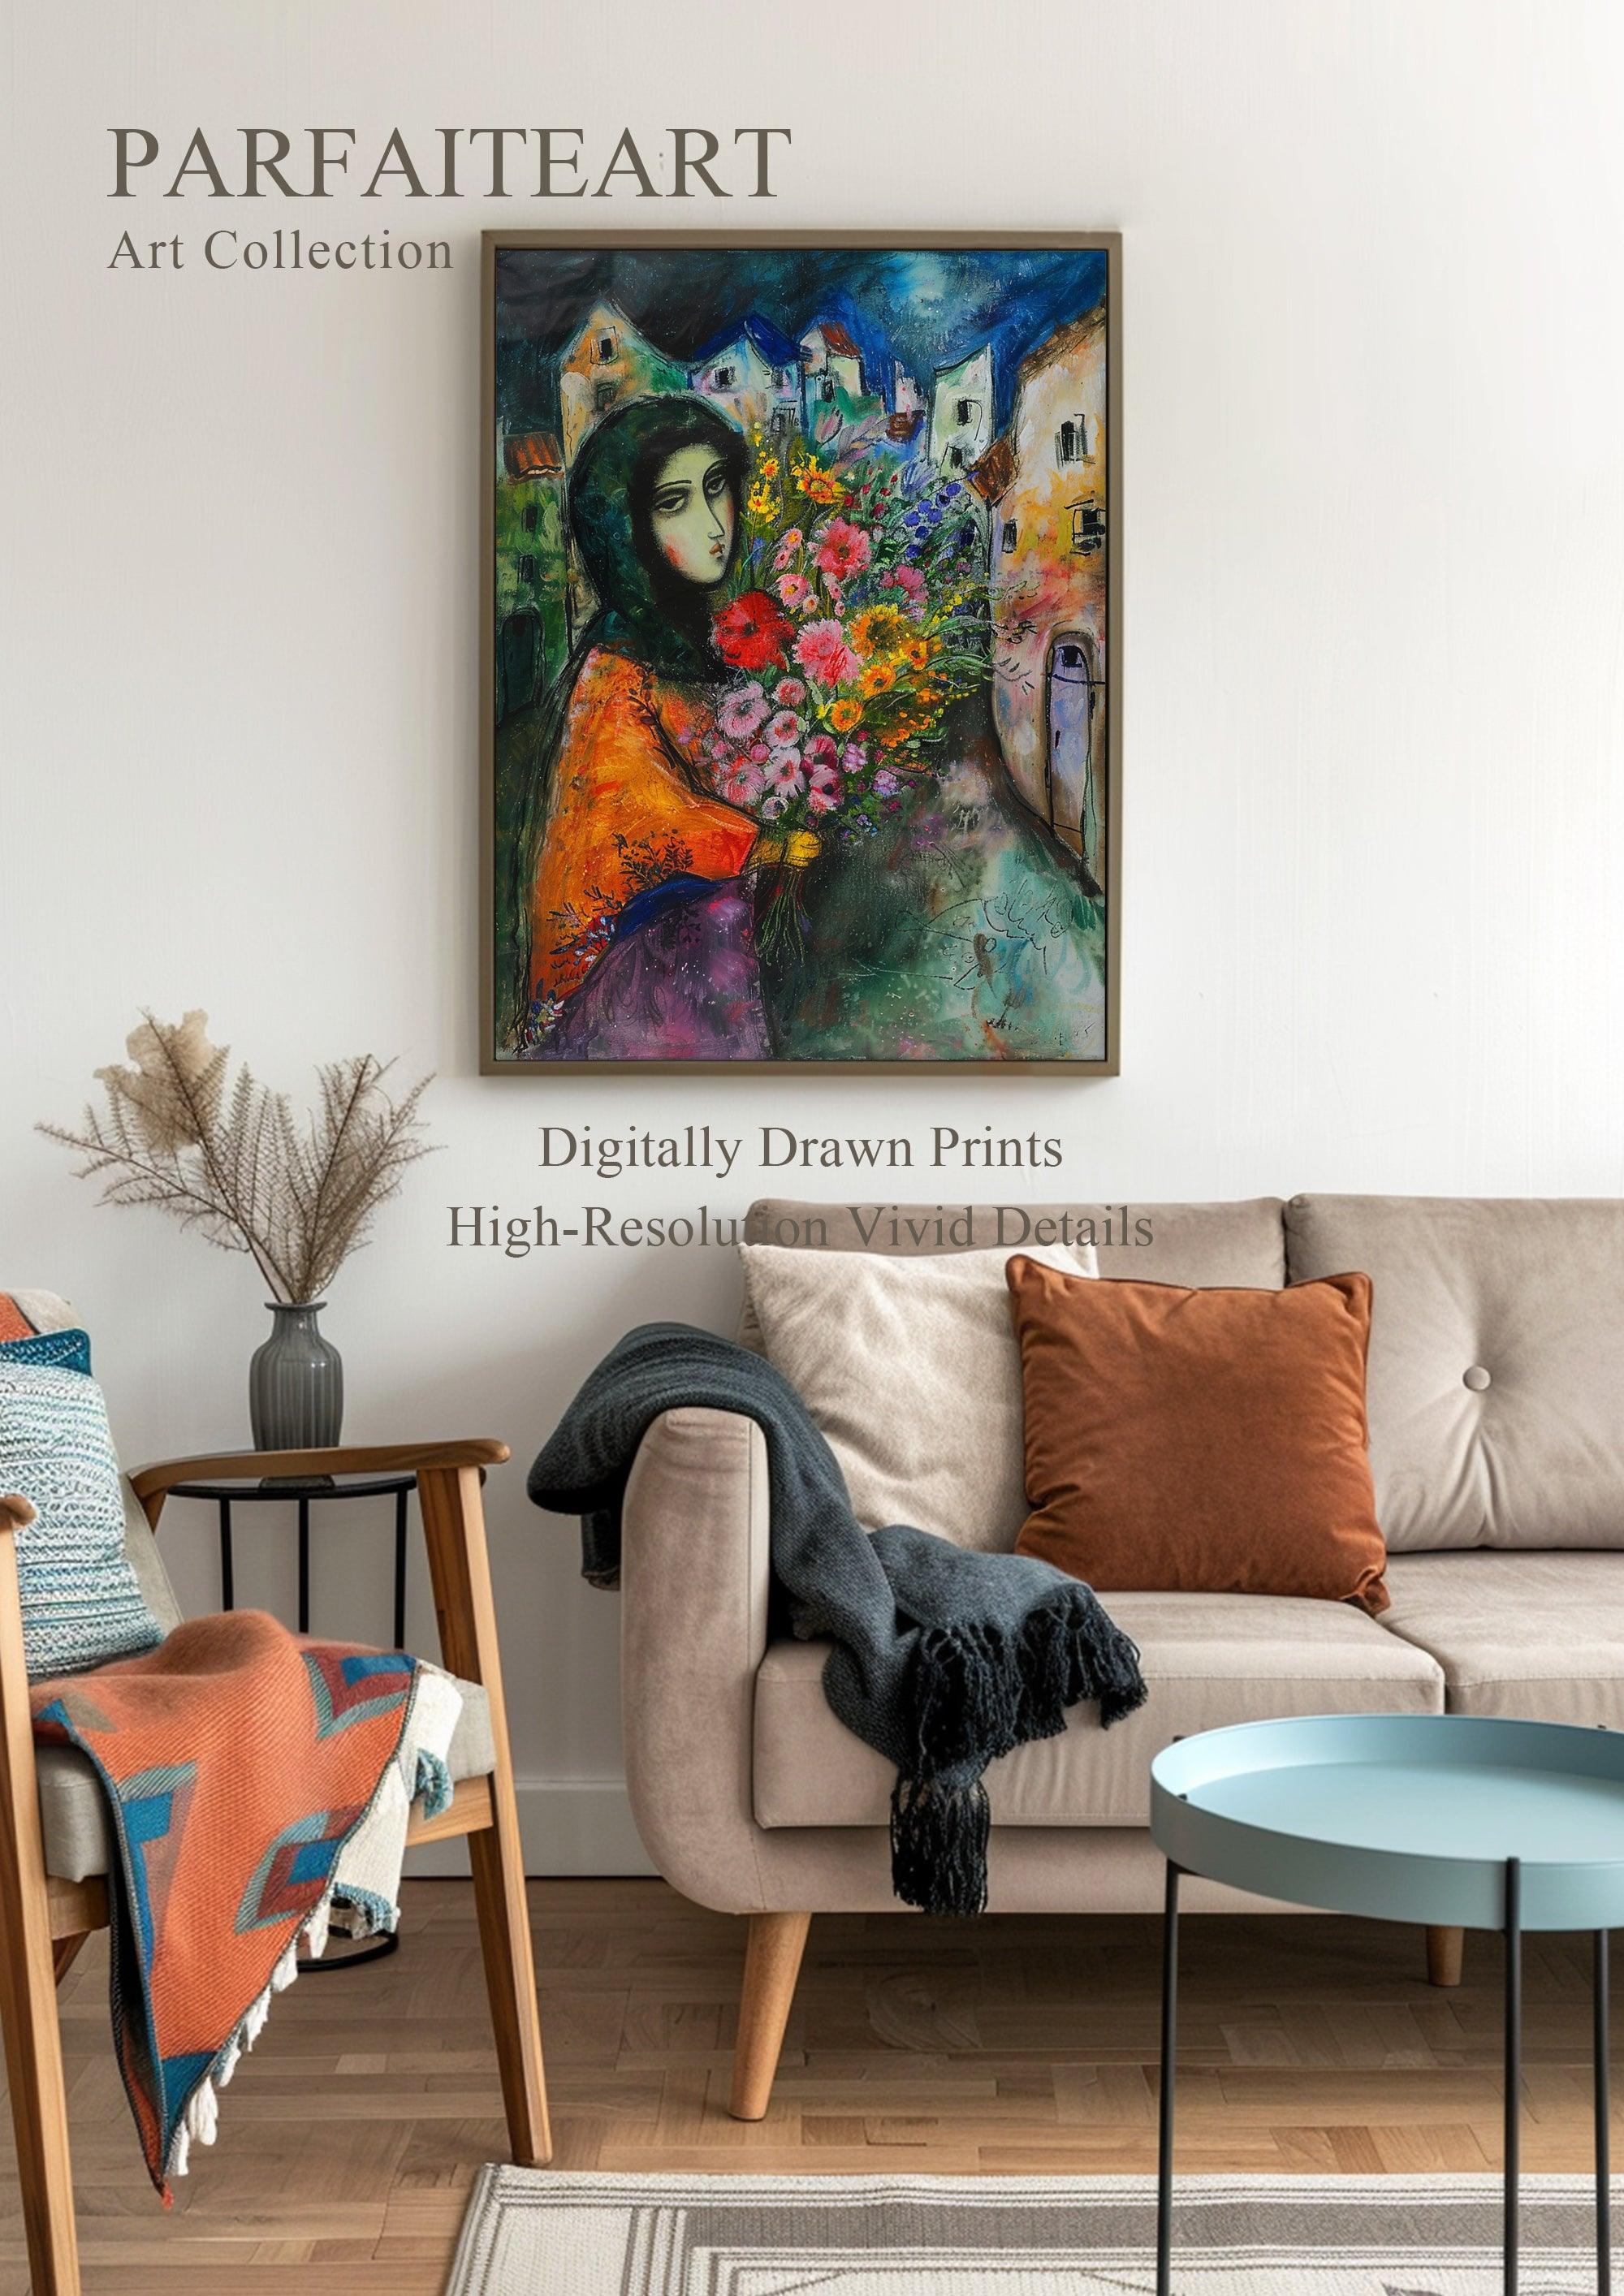 Primitivism,Canvas Print,Wall Art,Home Decor PC 3 - ParfaiteArt